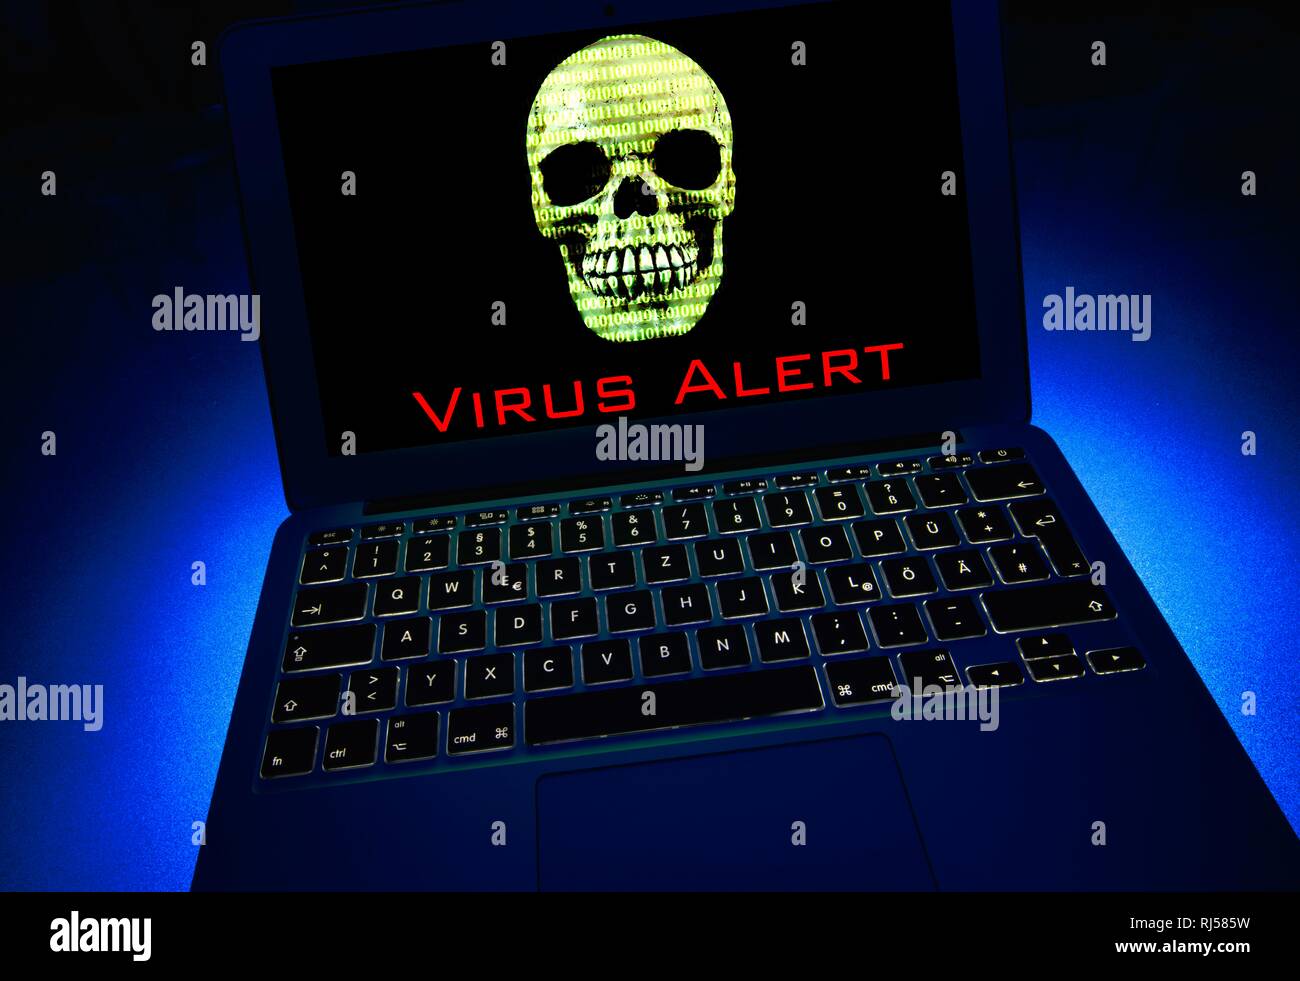 Portátil con Calavera y huesos cruzados y números binarios en la pantalla, el símbolo de la imagen de alarma de malware, virus, delitos informáticos Foto de stock